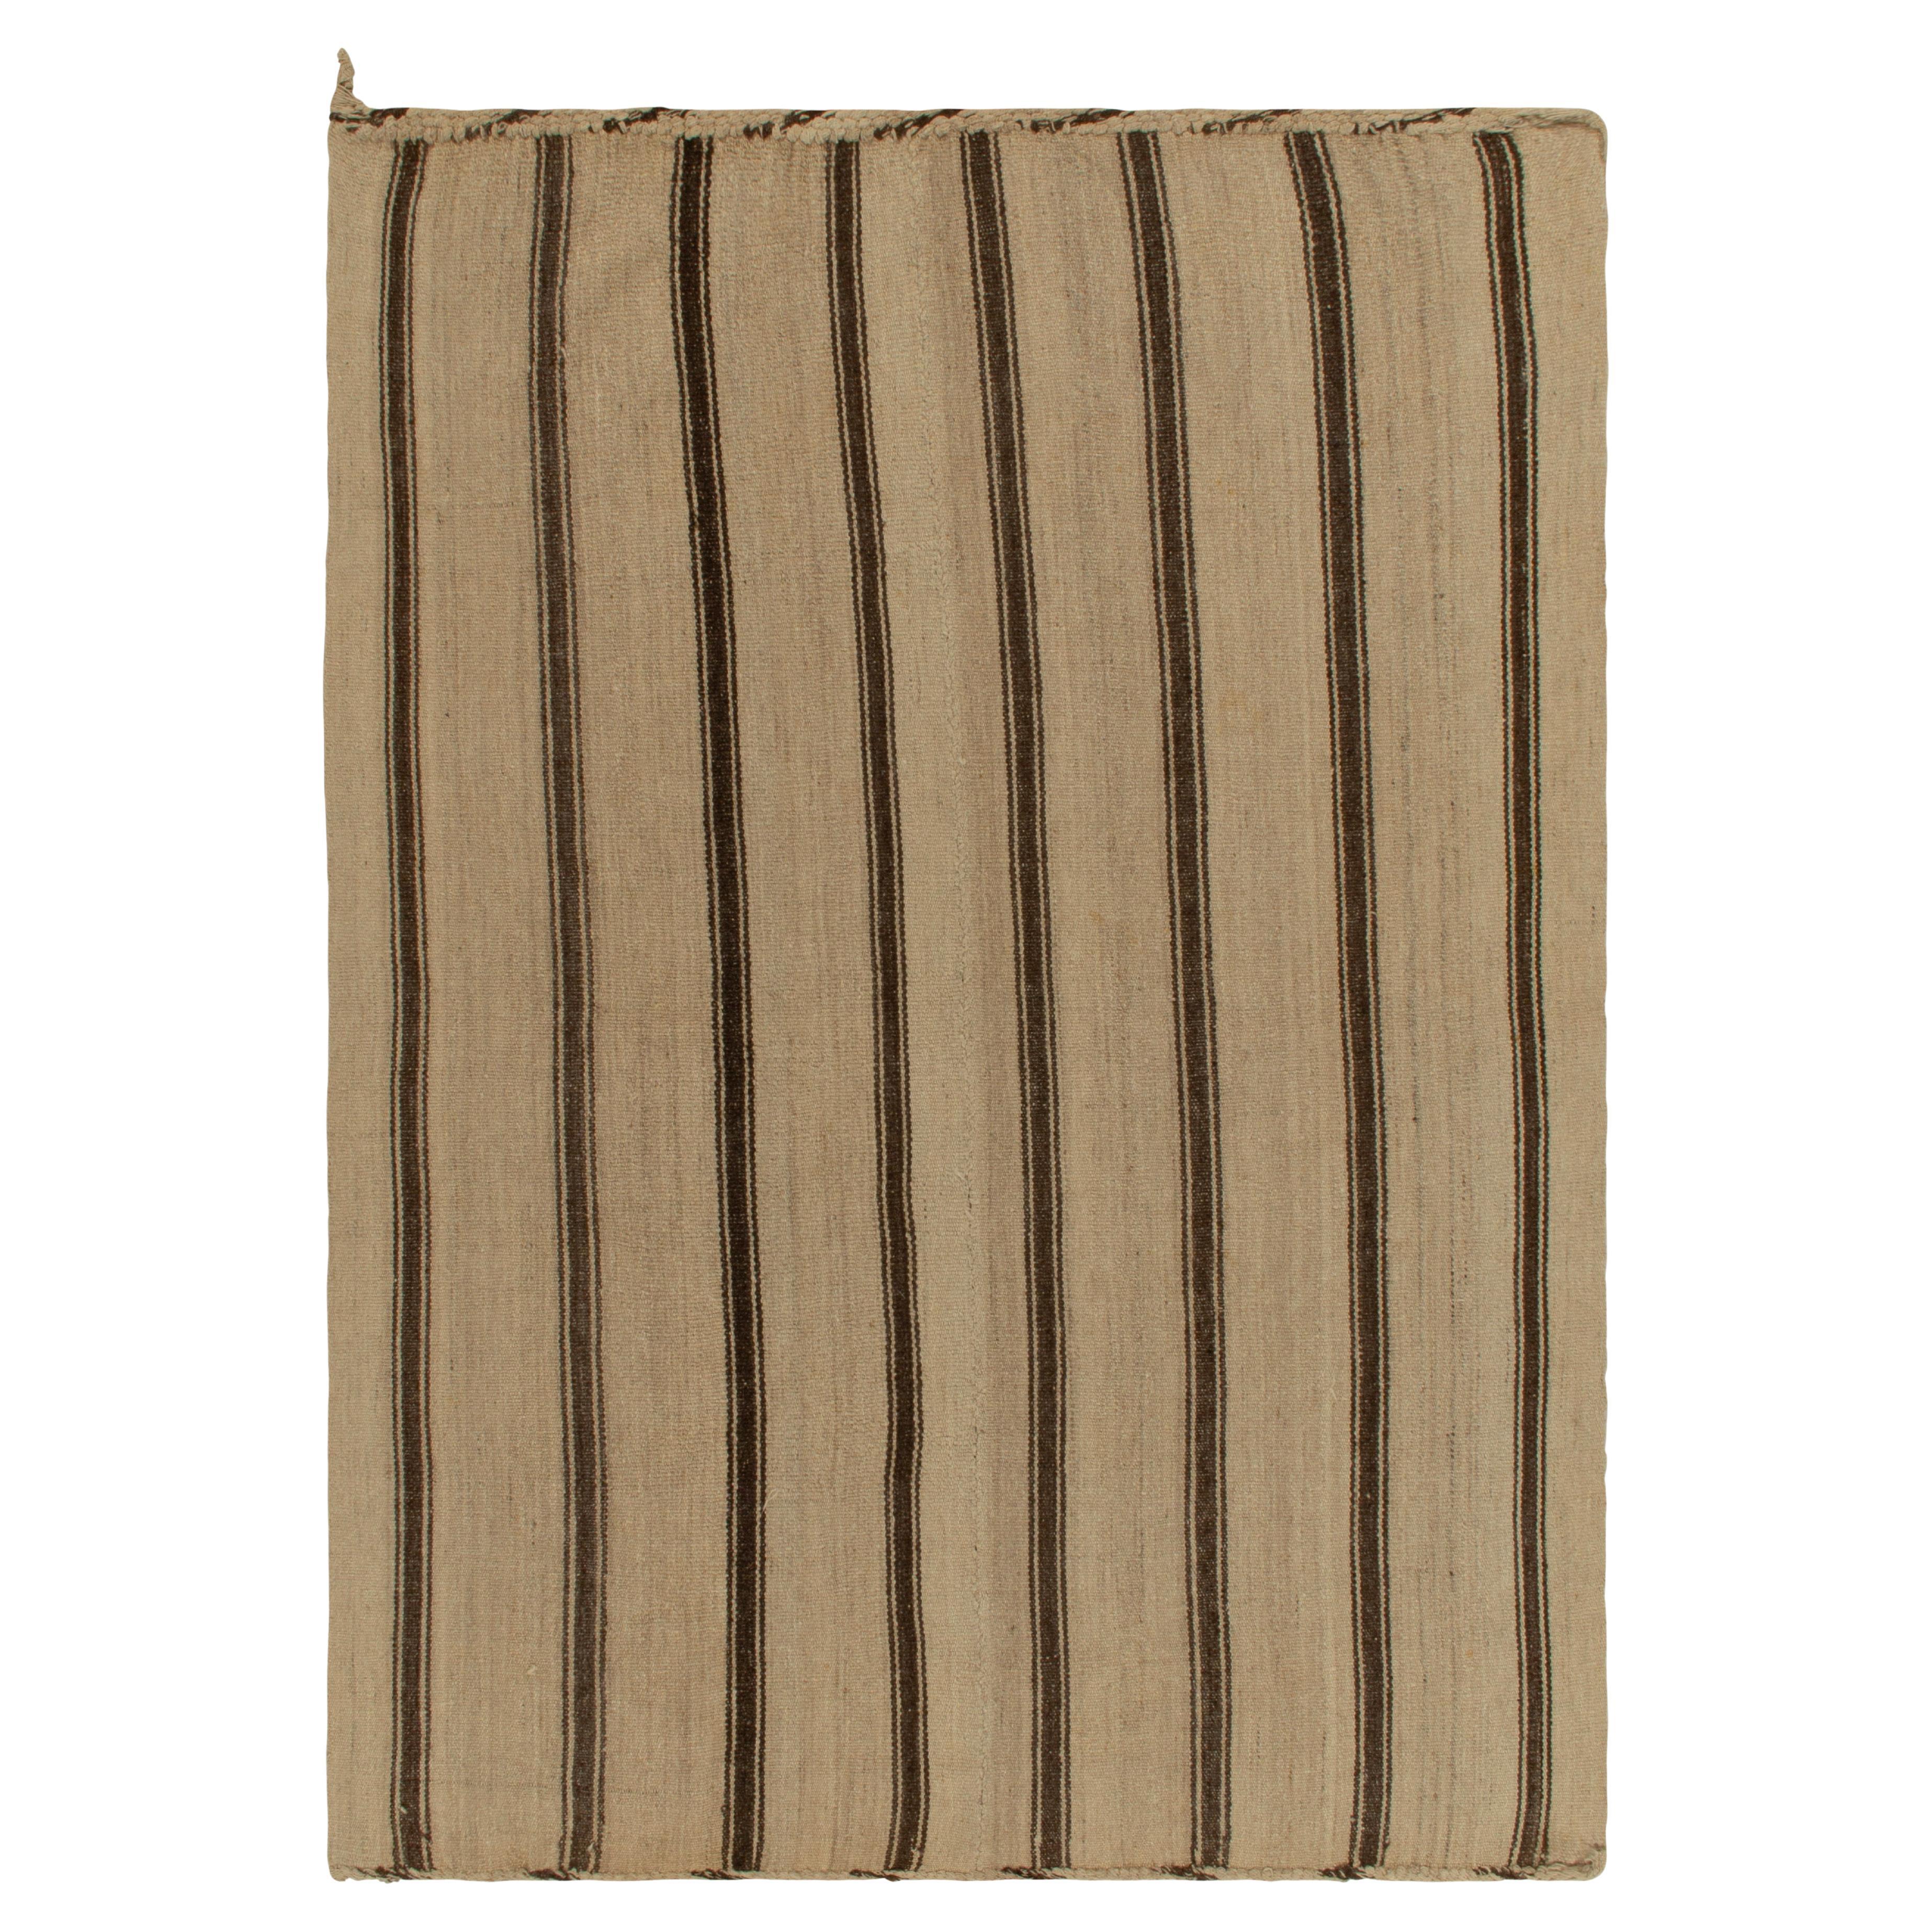 Handwoven Vintage Kilim Beige-Brown Stripe Patterns by Rug & Kilim